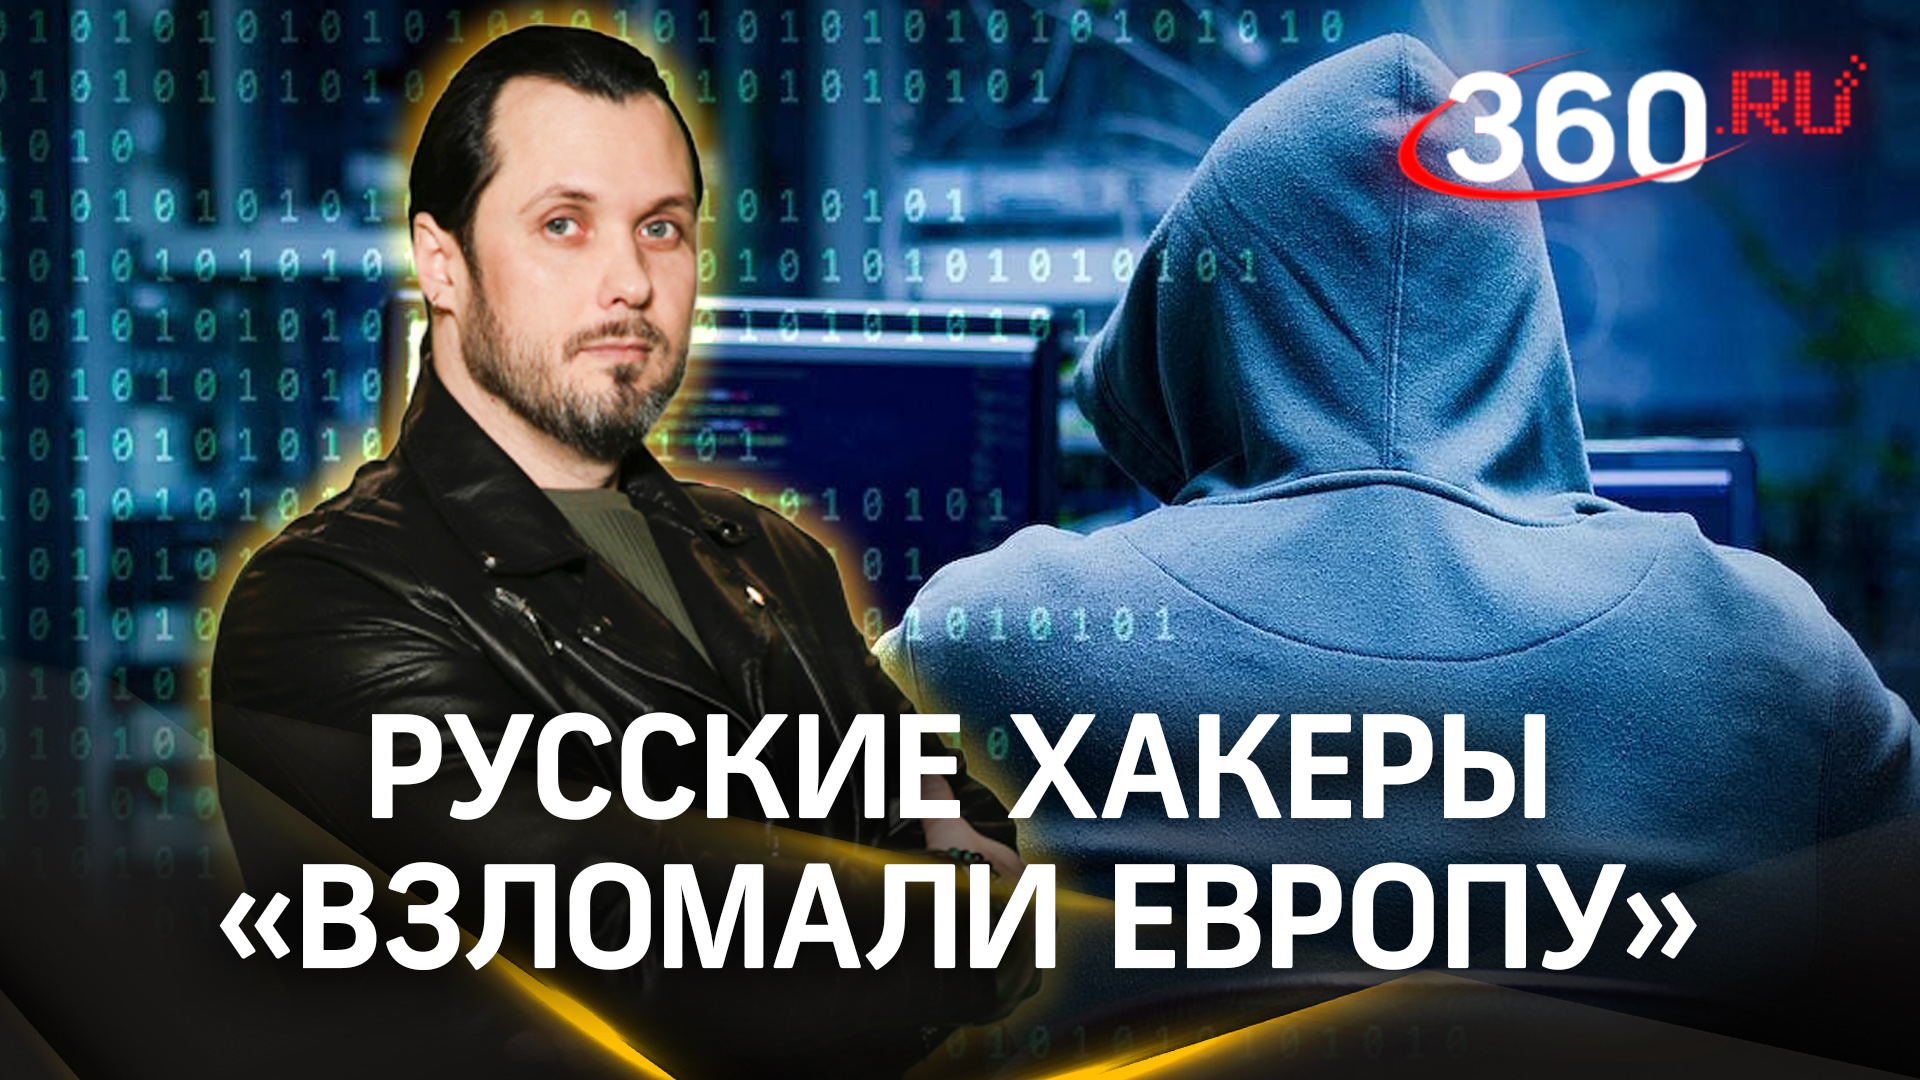 Русские хакеры устроили диверсию в Европе перед «саммитом мира». Иван Бер